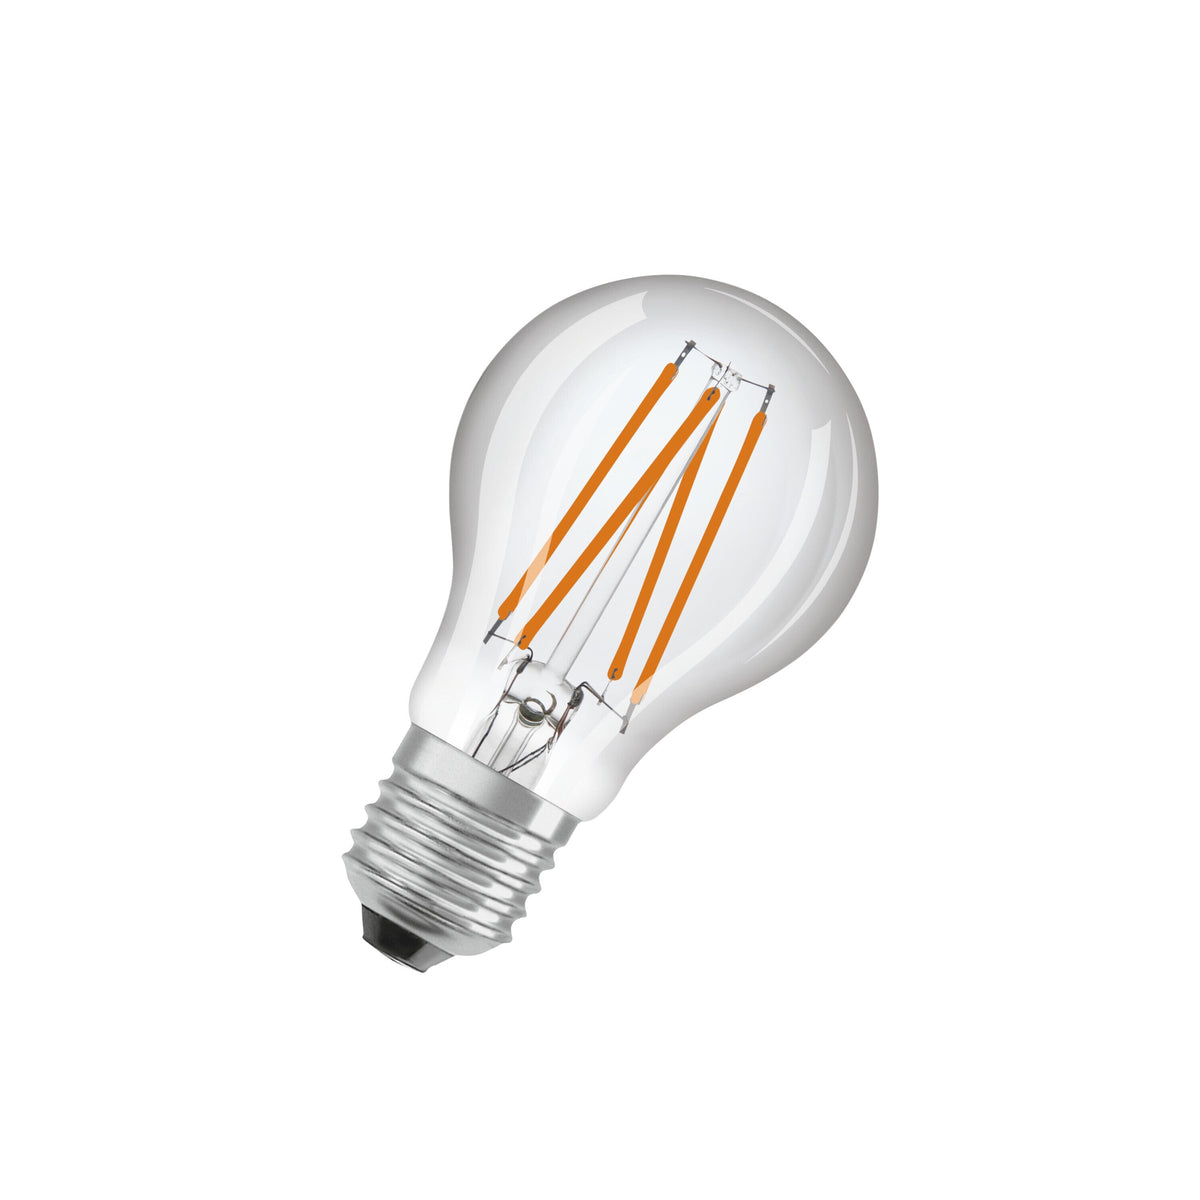 OSRAM Star+ LED-Lampe mit Tageslichtsensor für E27-Sockel, Filament-Optik ,Warmweiß (2700K), 470 Lumen, Ersatz für herkömmliche 40W-Leuchtmittel, nicht dimmbar, 1-er Pack